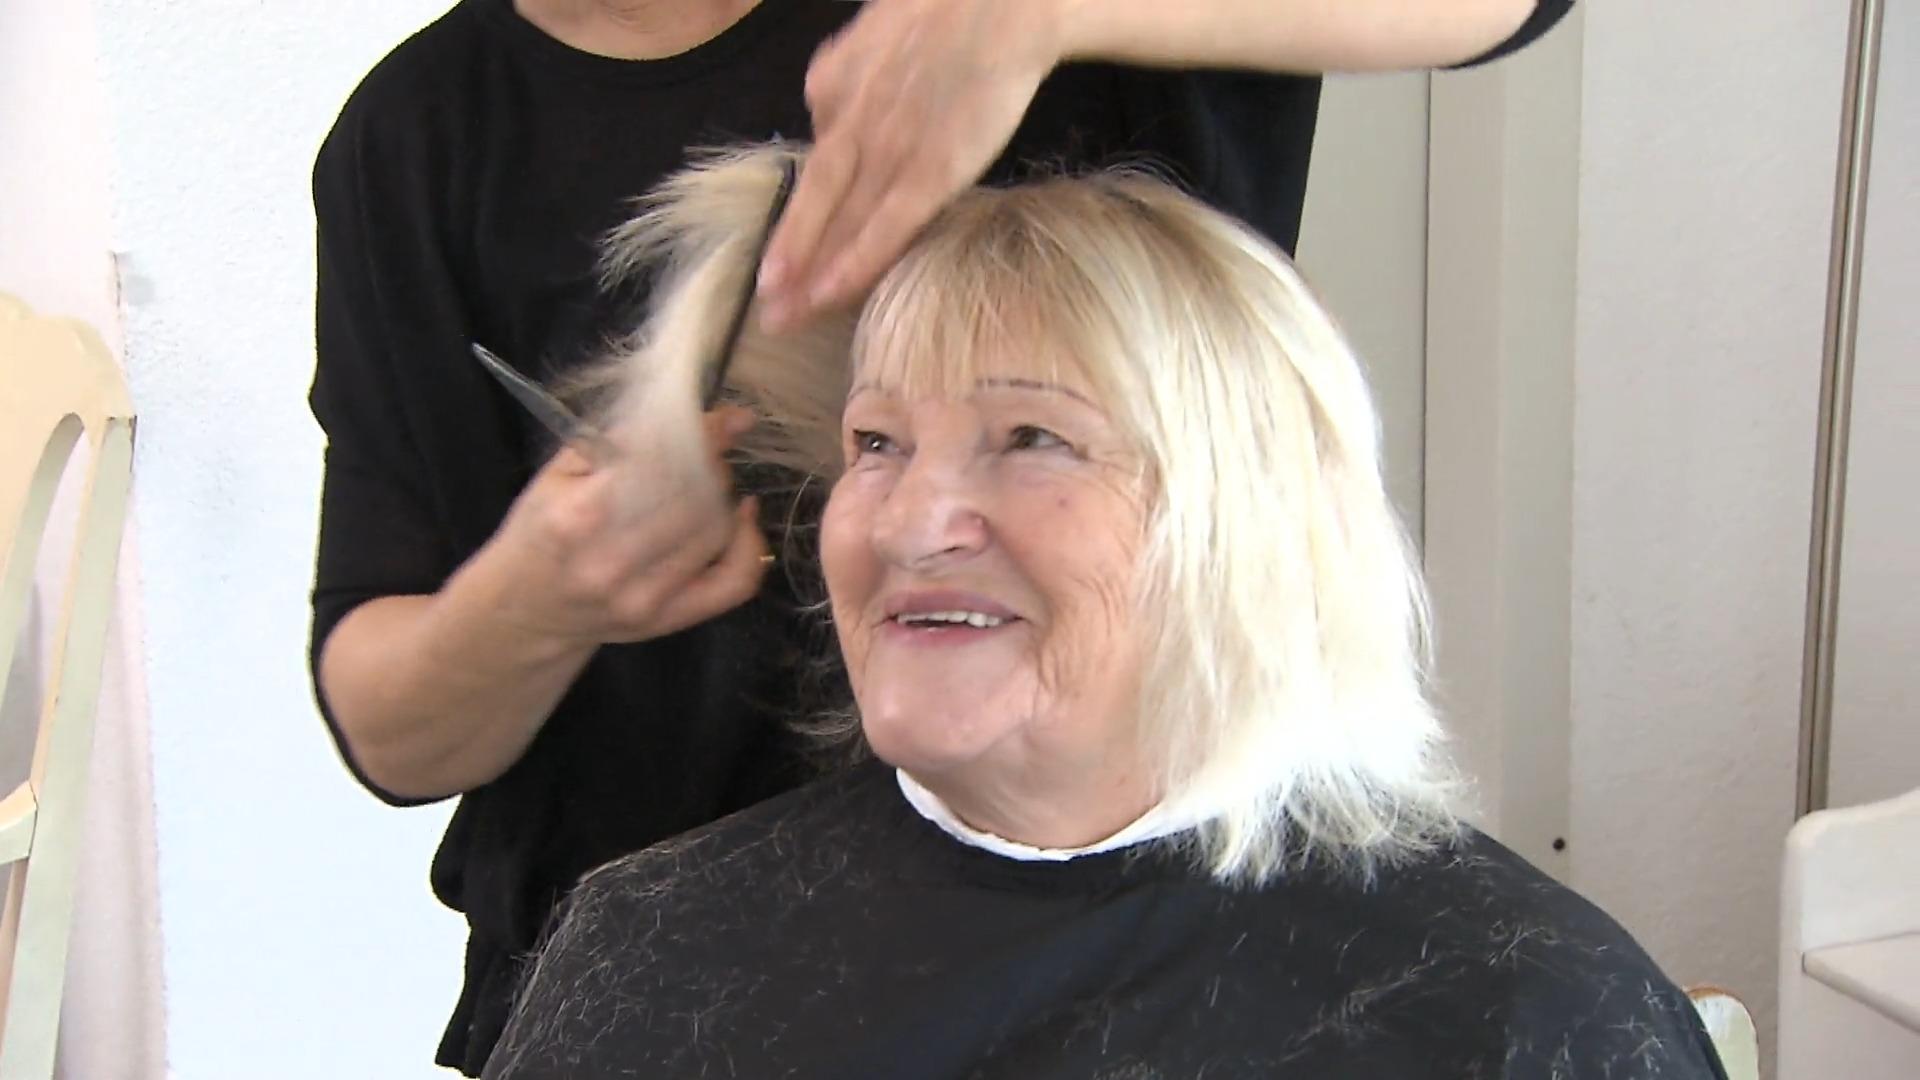 Friseurin Jessica verändert Leben - mit Schere und Kamm Kostenloser Haarschnitt für Bedürftige